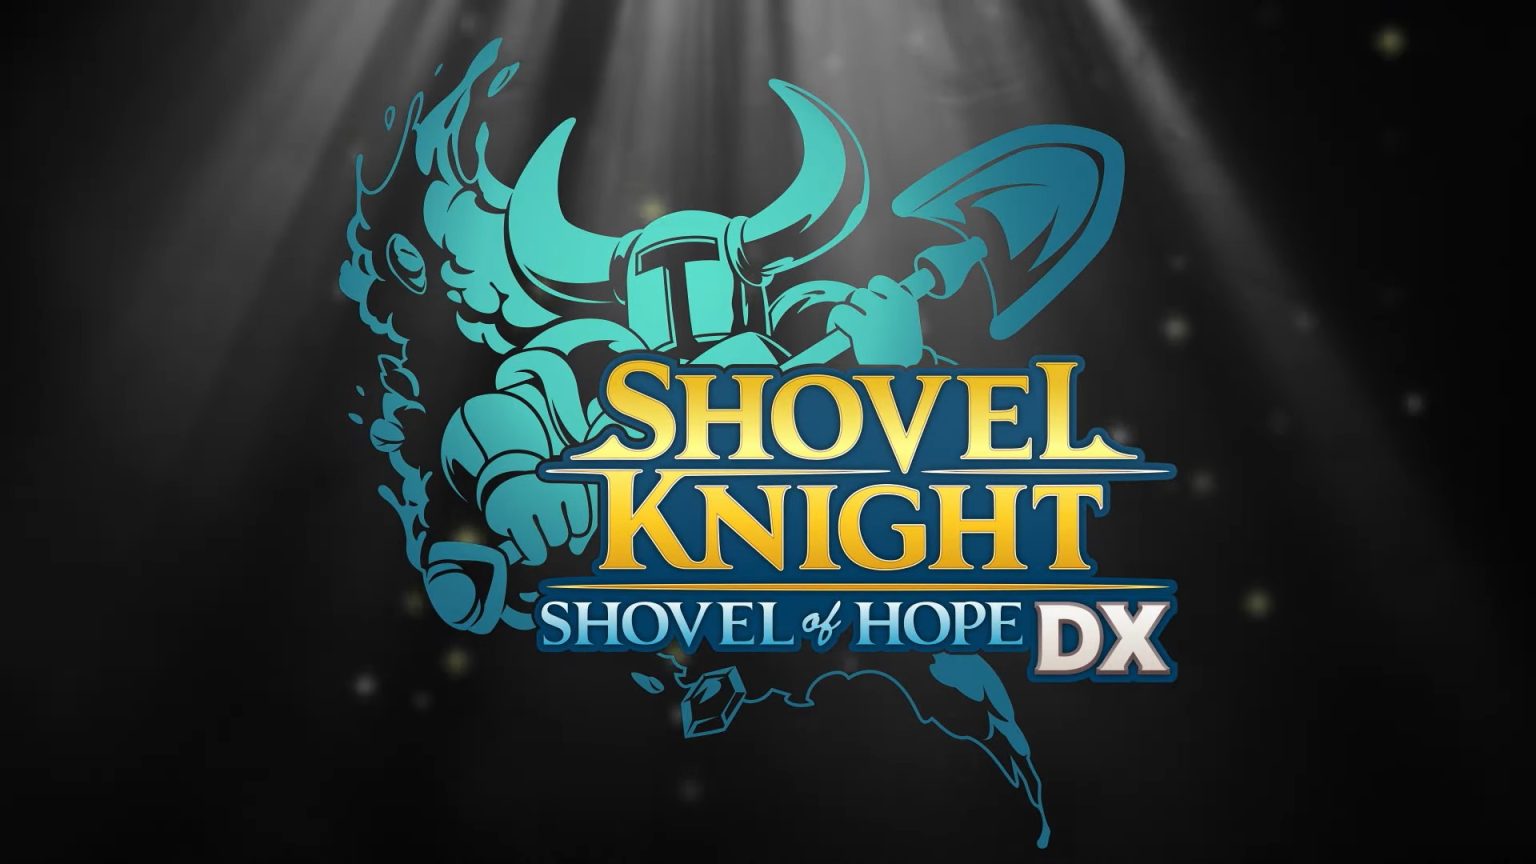 Die erweiterte Edition von Shovel Knight wurde angekündigt: Schaufel der Hoffnung - Schaufel der Hoffnung DX